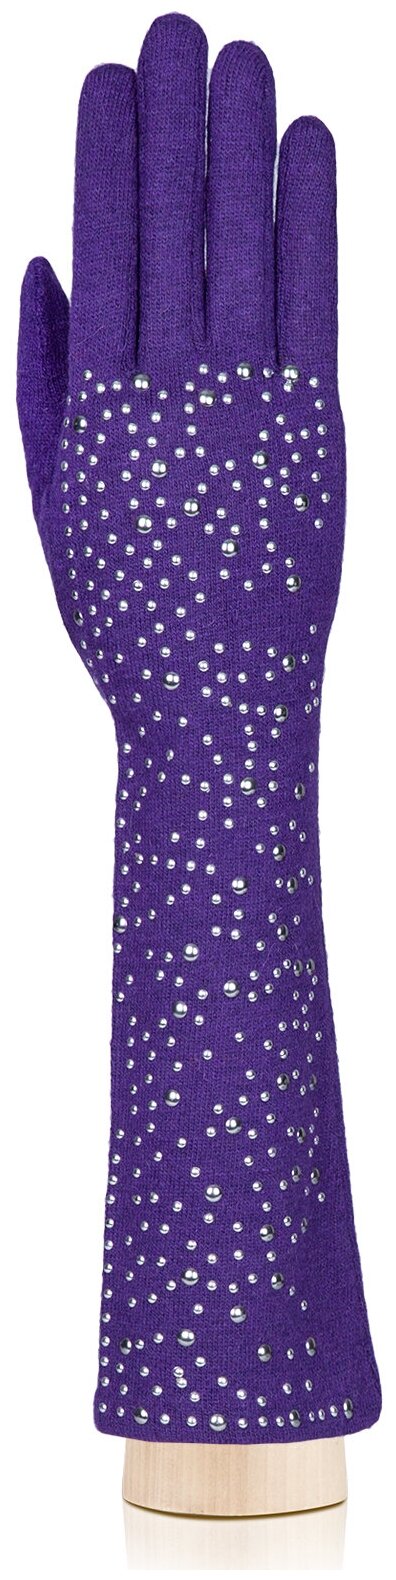 Перчатки LABBRA демисезонные, шерсть, подкладка, размер 7, фиолетовый